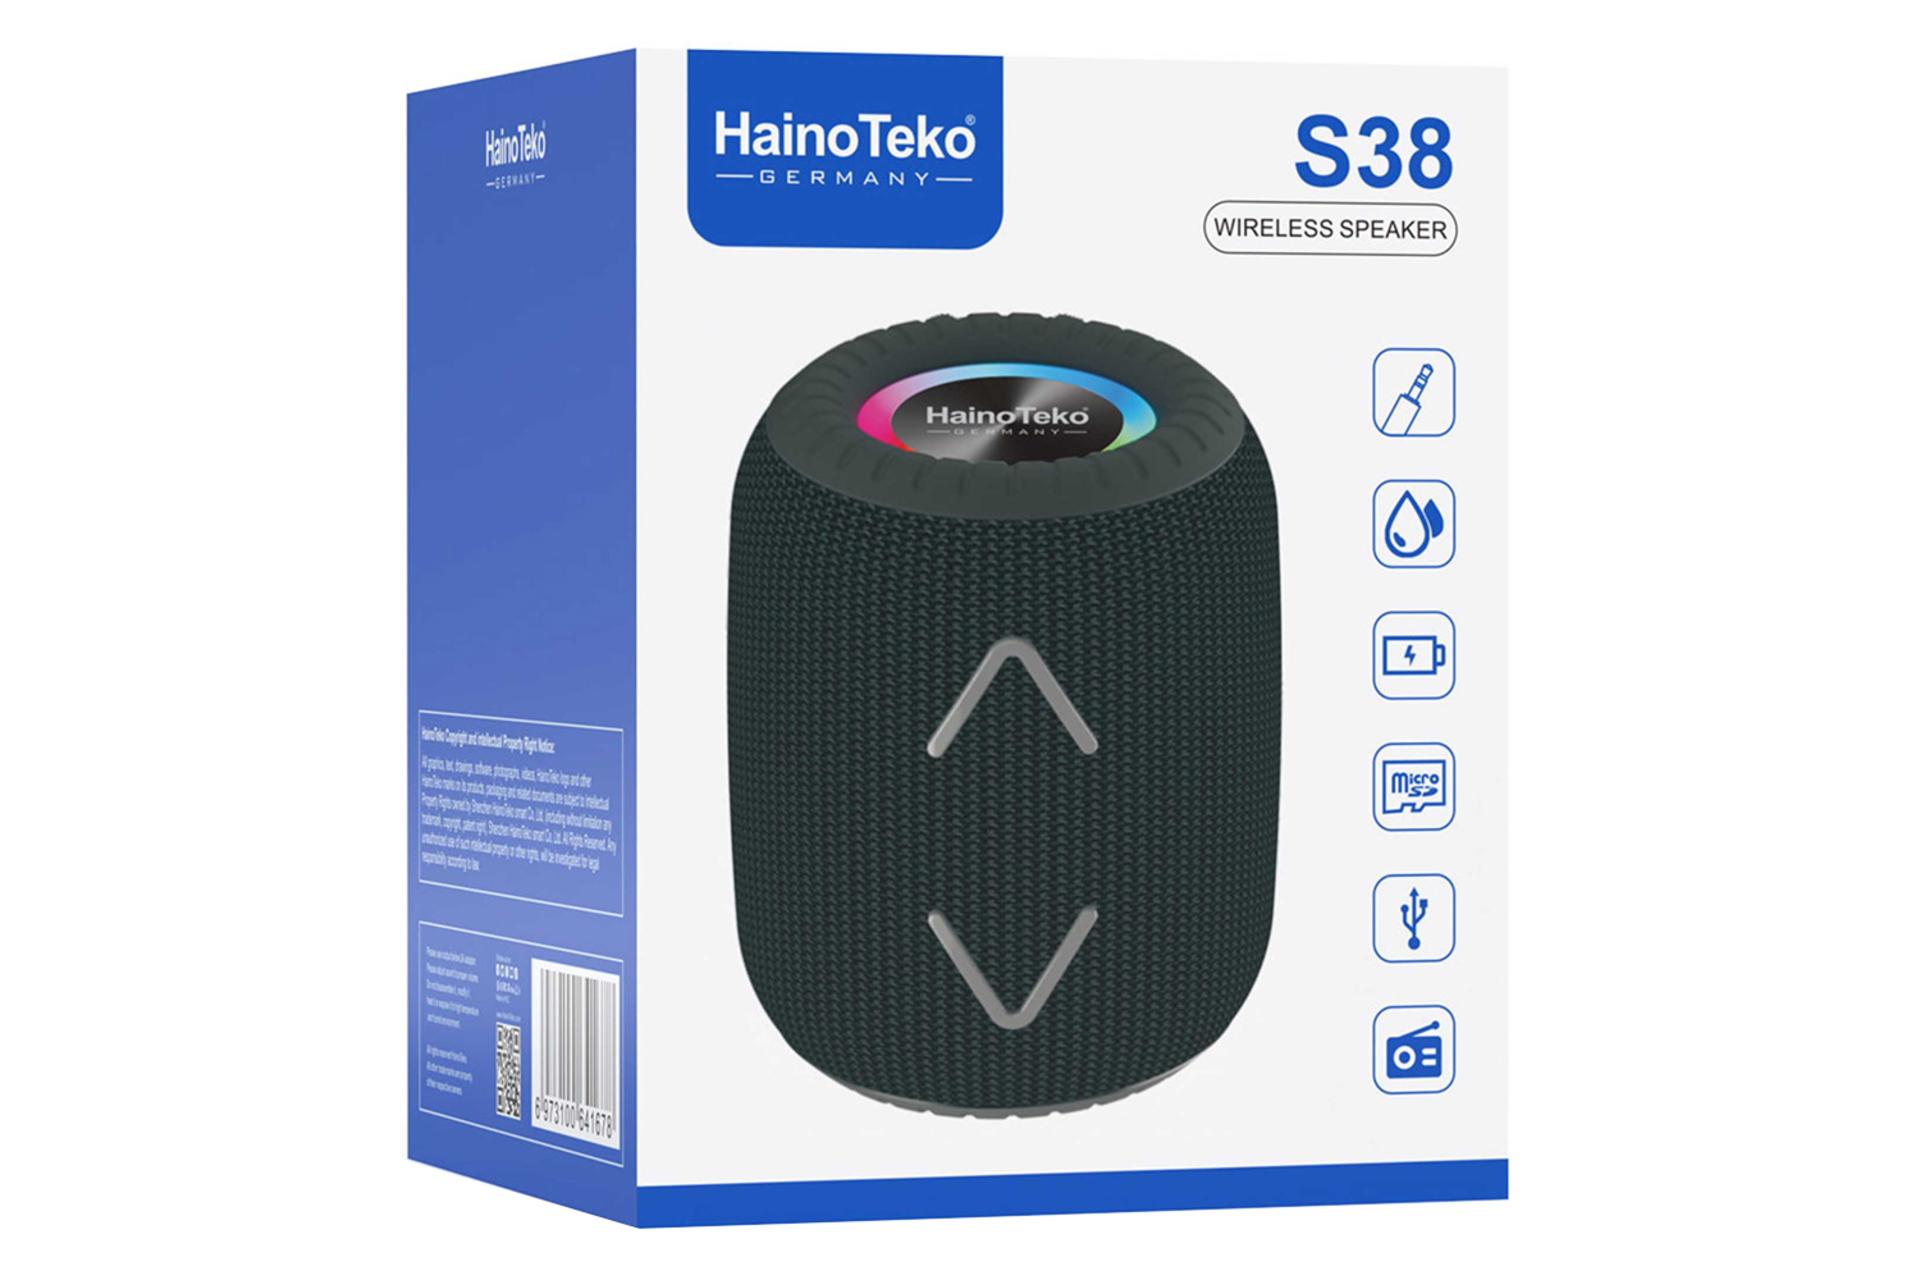 جعبه اسپیکر هاینو تکو Haino Teko S38